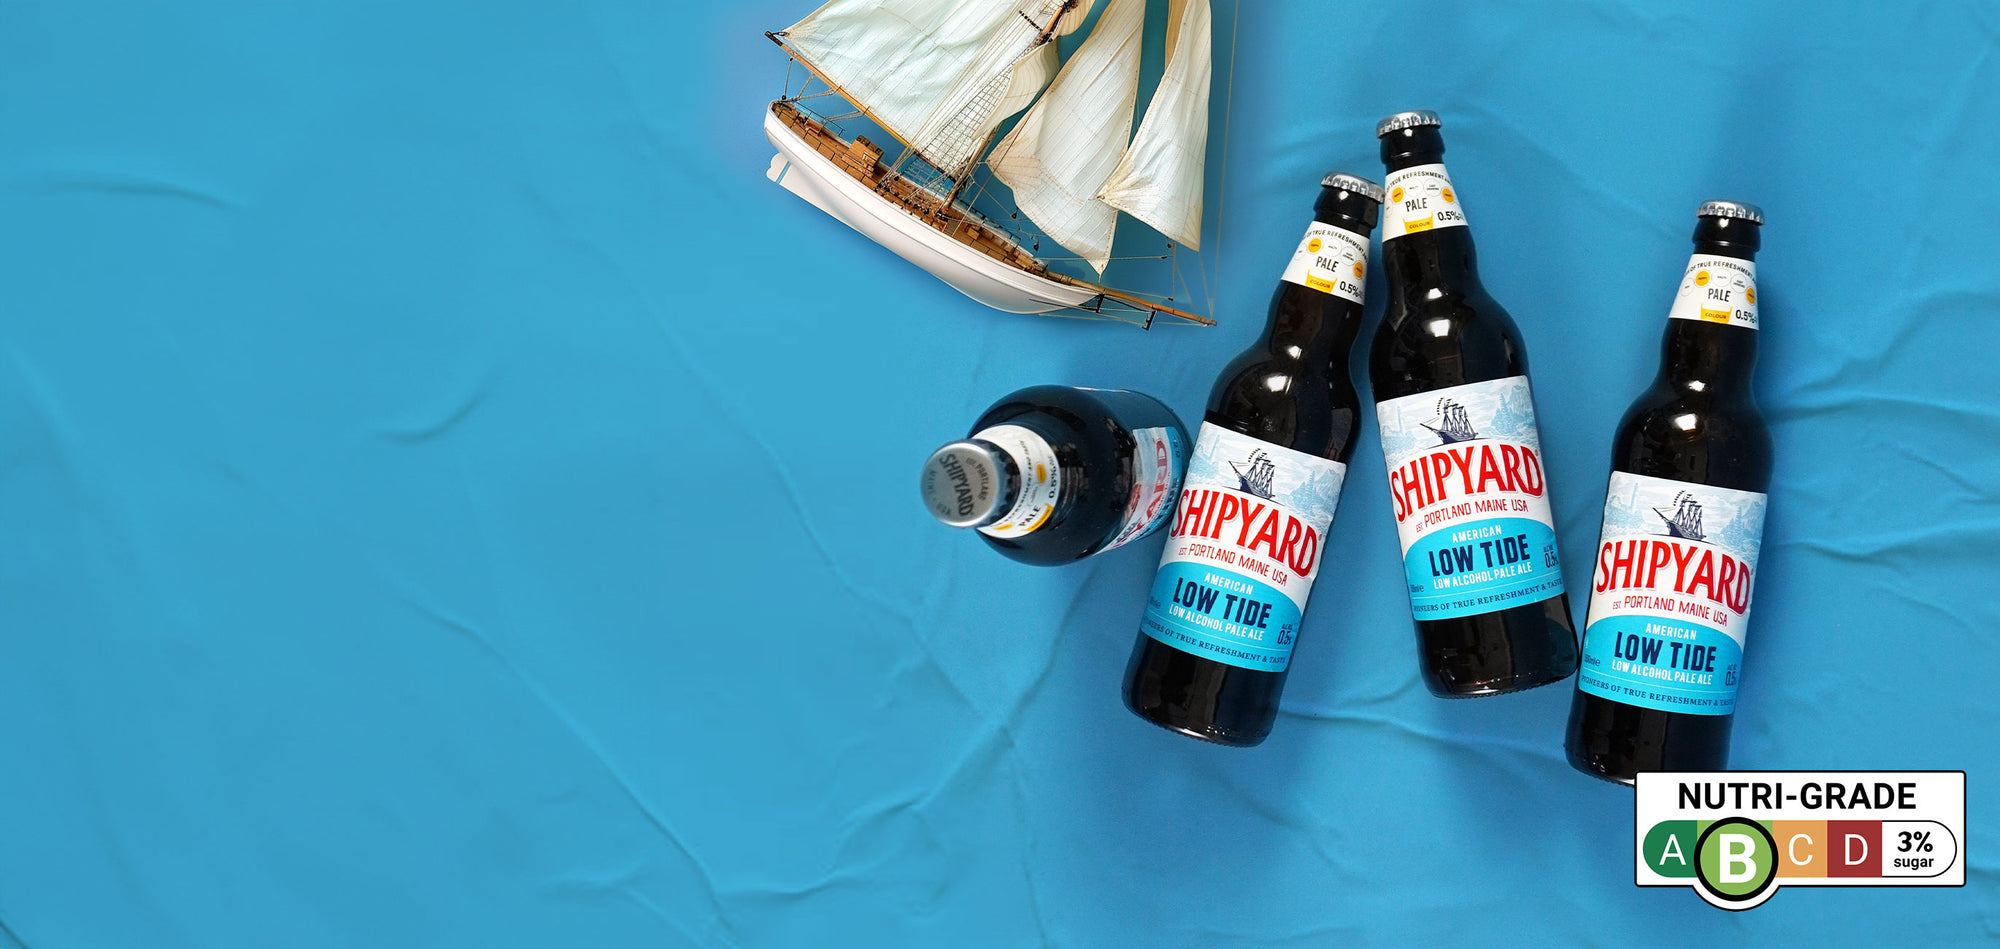 Shipyard Low Tide Alcohol-Free Pale Ale